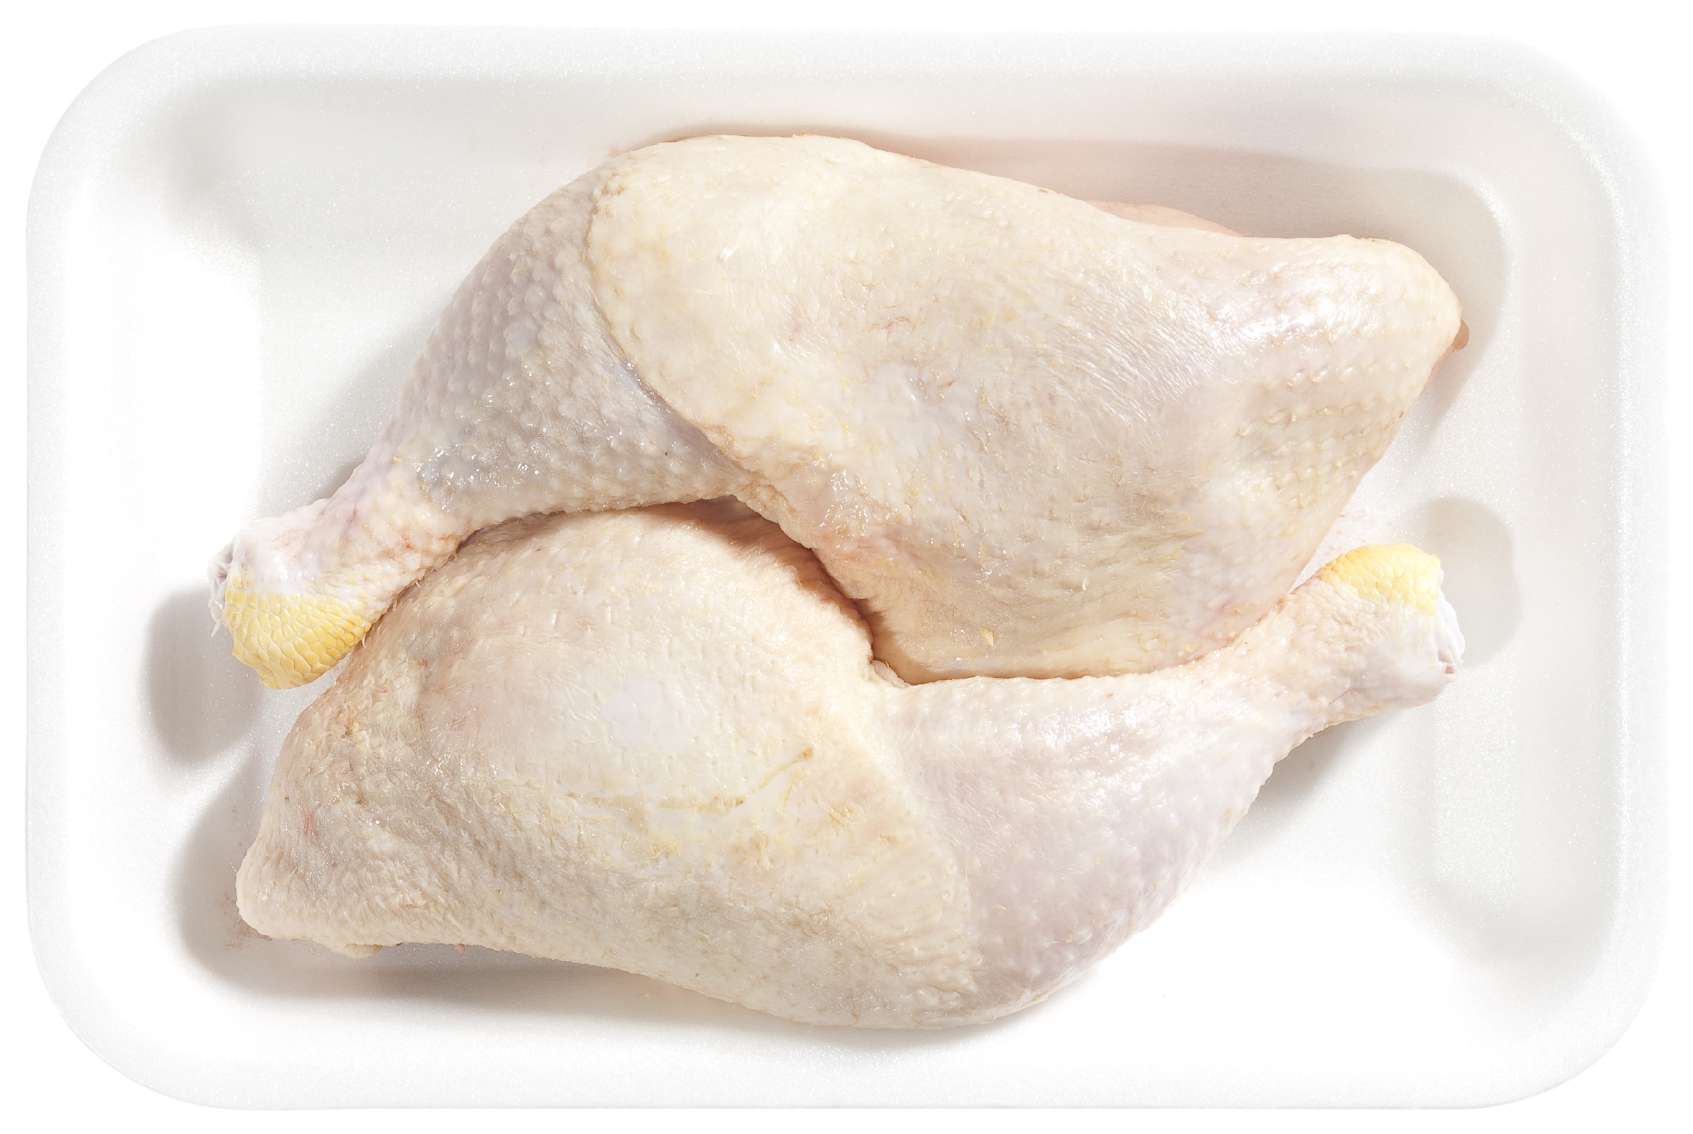 Comment savoir si le poulet est cuit sans thermometre ?